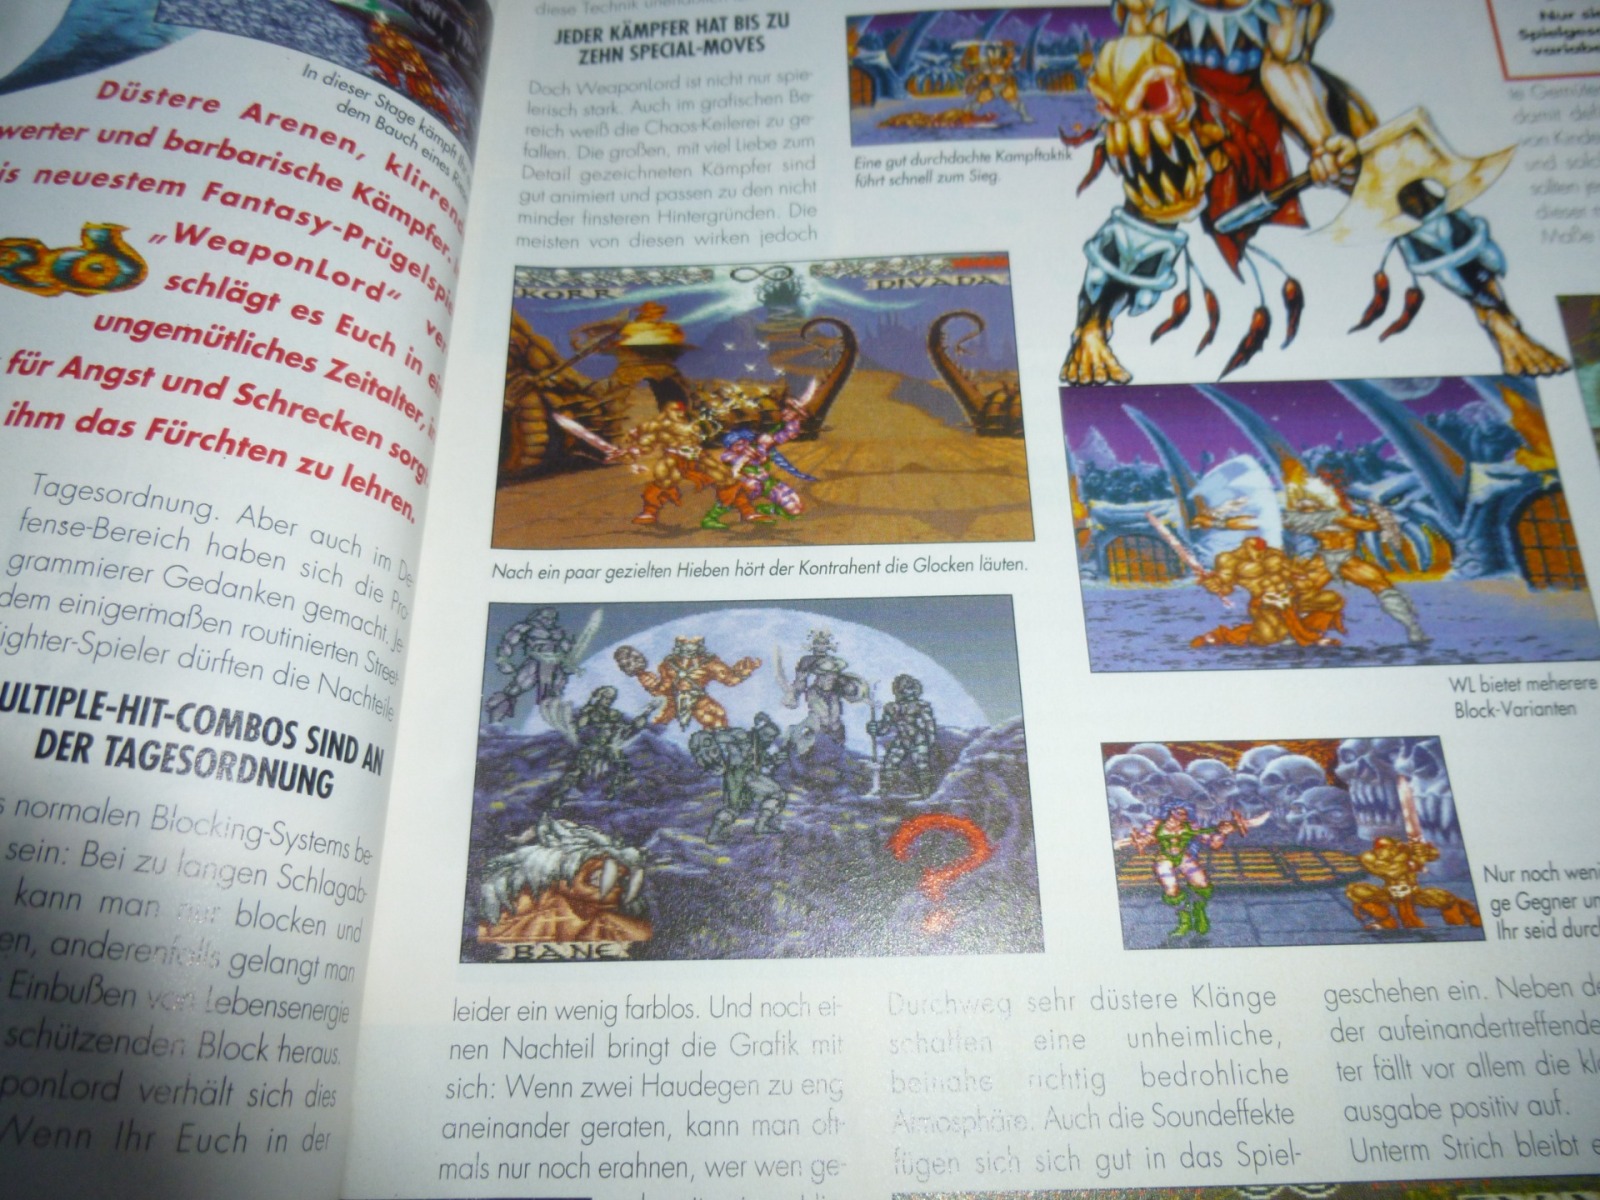 TOTAL Das unabhängige Magazin - 100% Nintendo - Ausgabe 2/96 1996 9